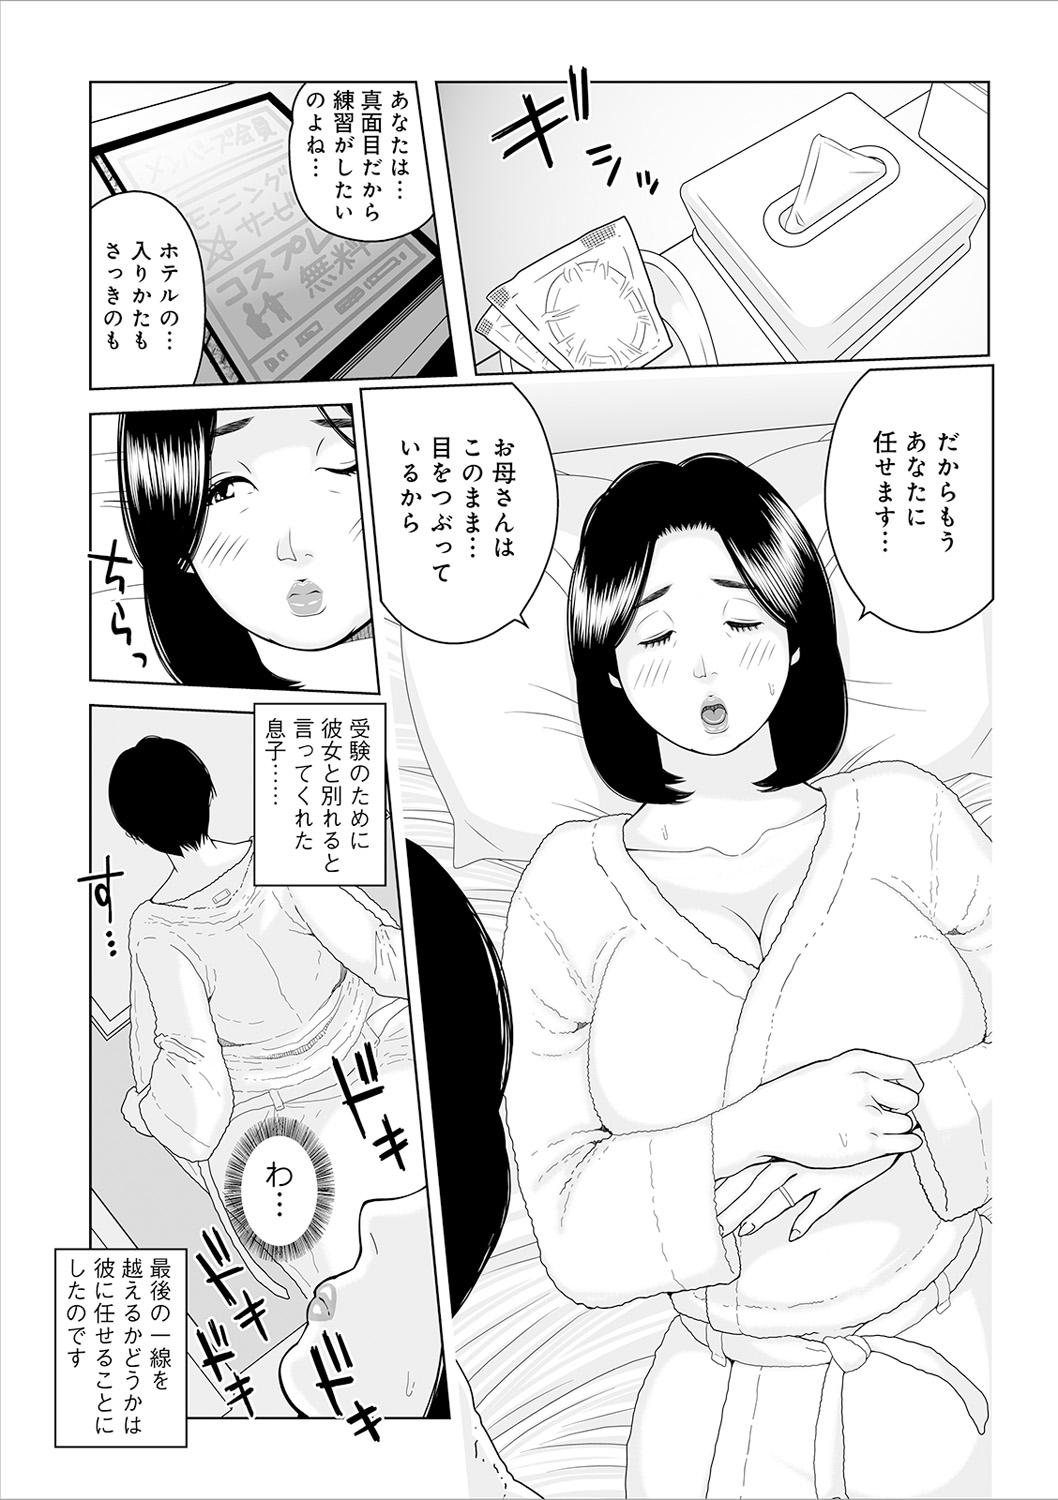 Oba-san Dashite mo ii? Vol. 02 81